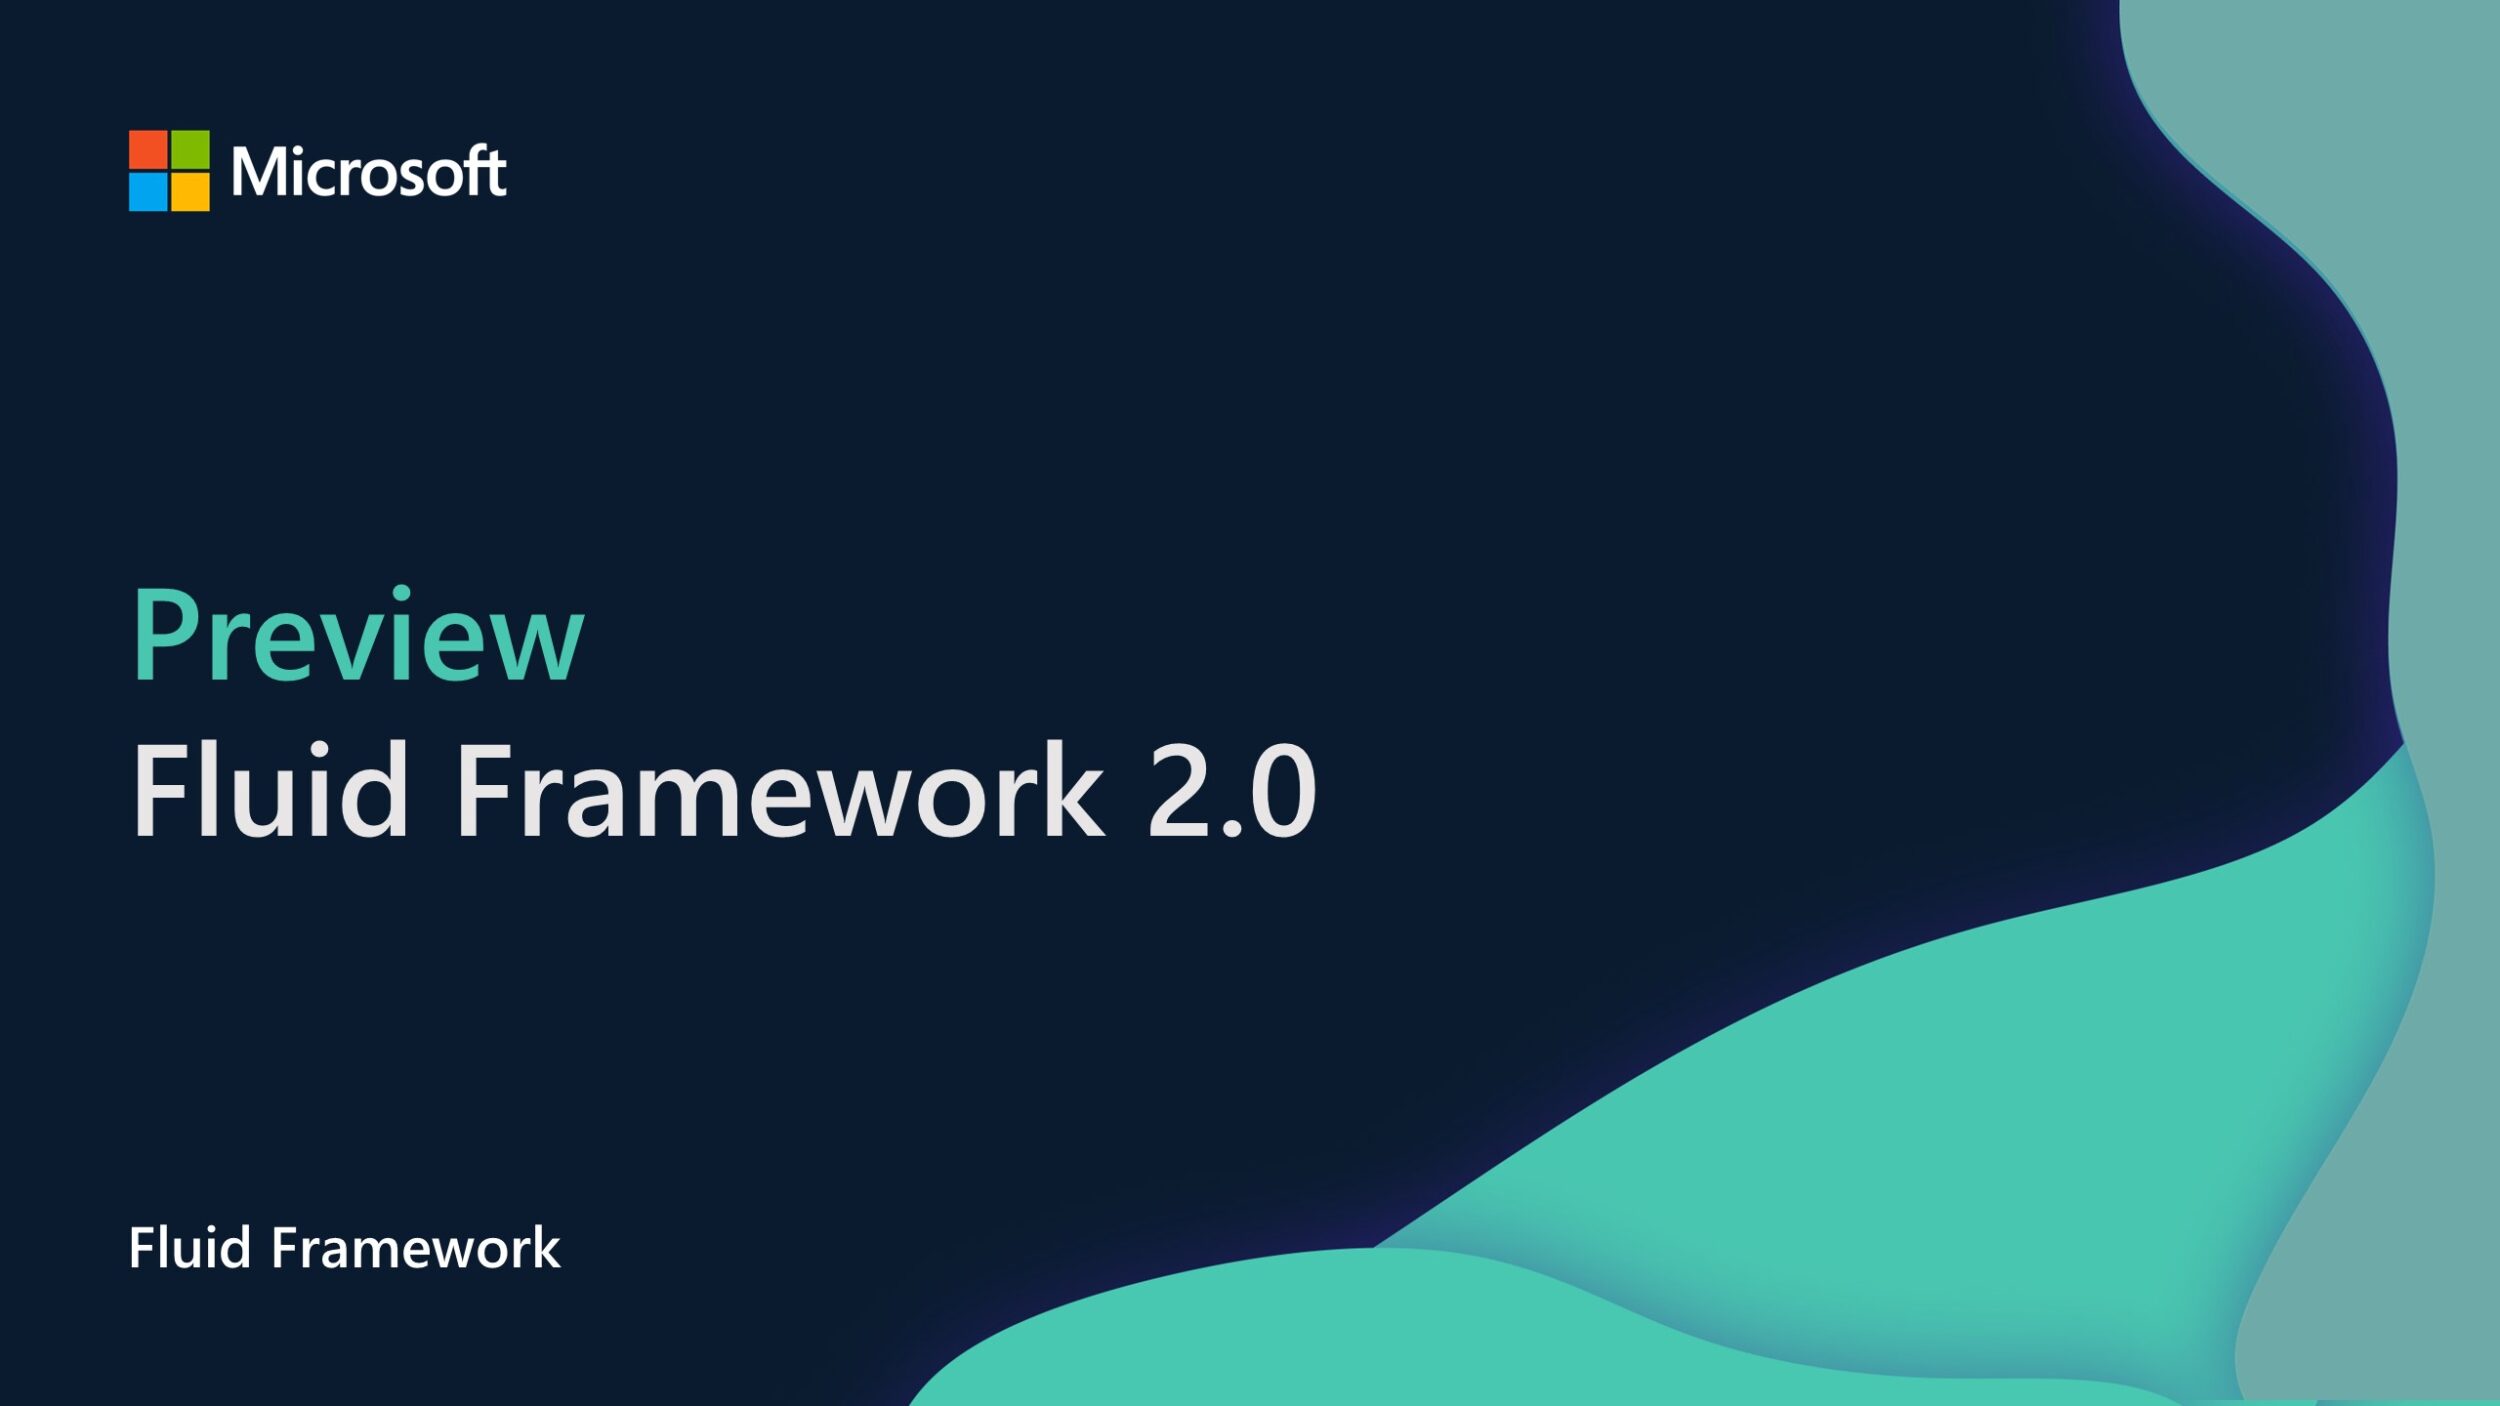 Announcing Fluid Framework 2.0 Preview